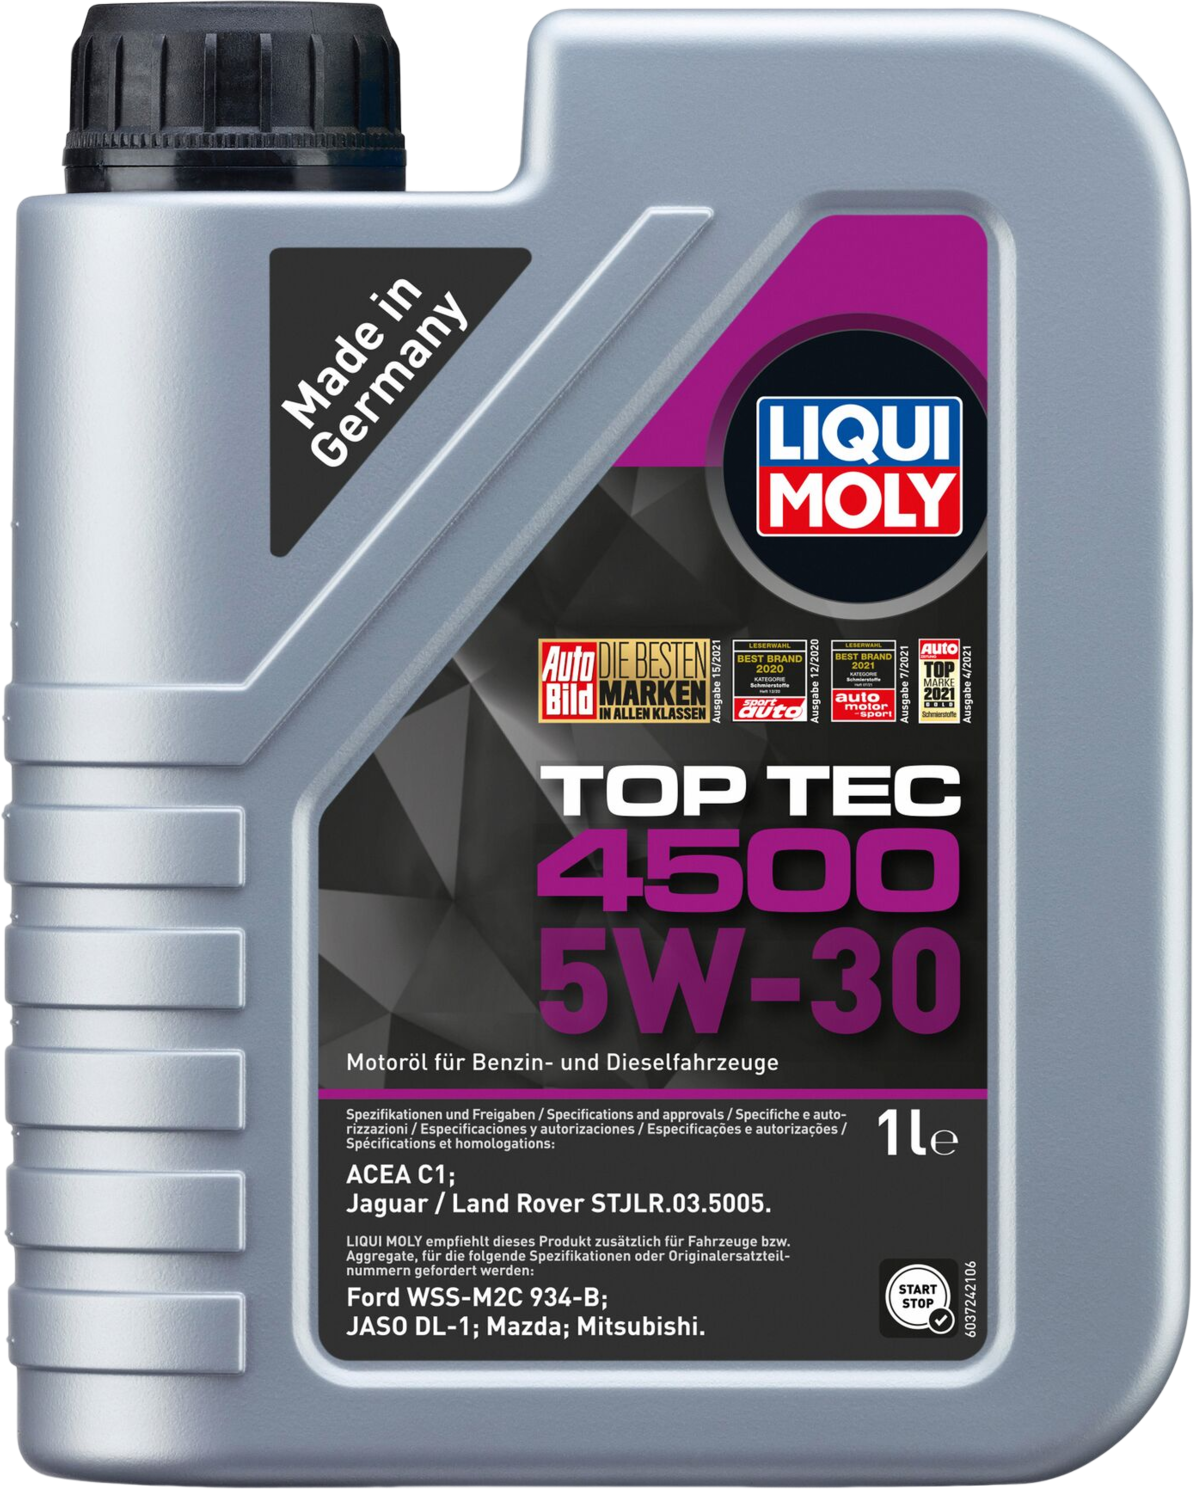 Liqui Moly Top Tec 4500 5W-30, 1 lt